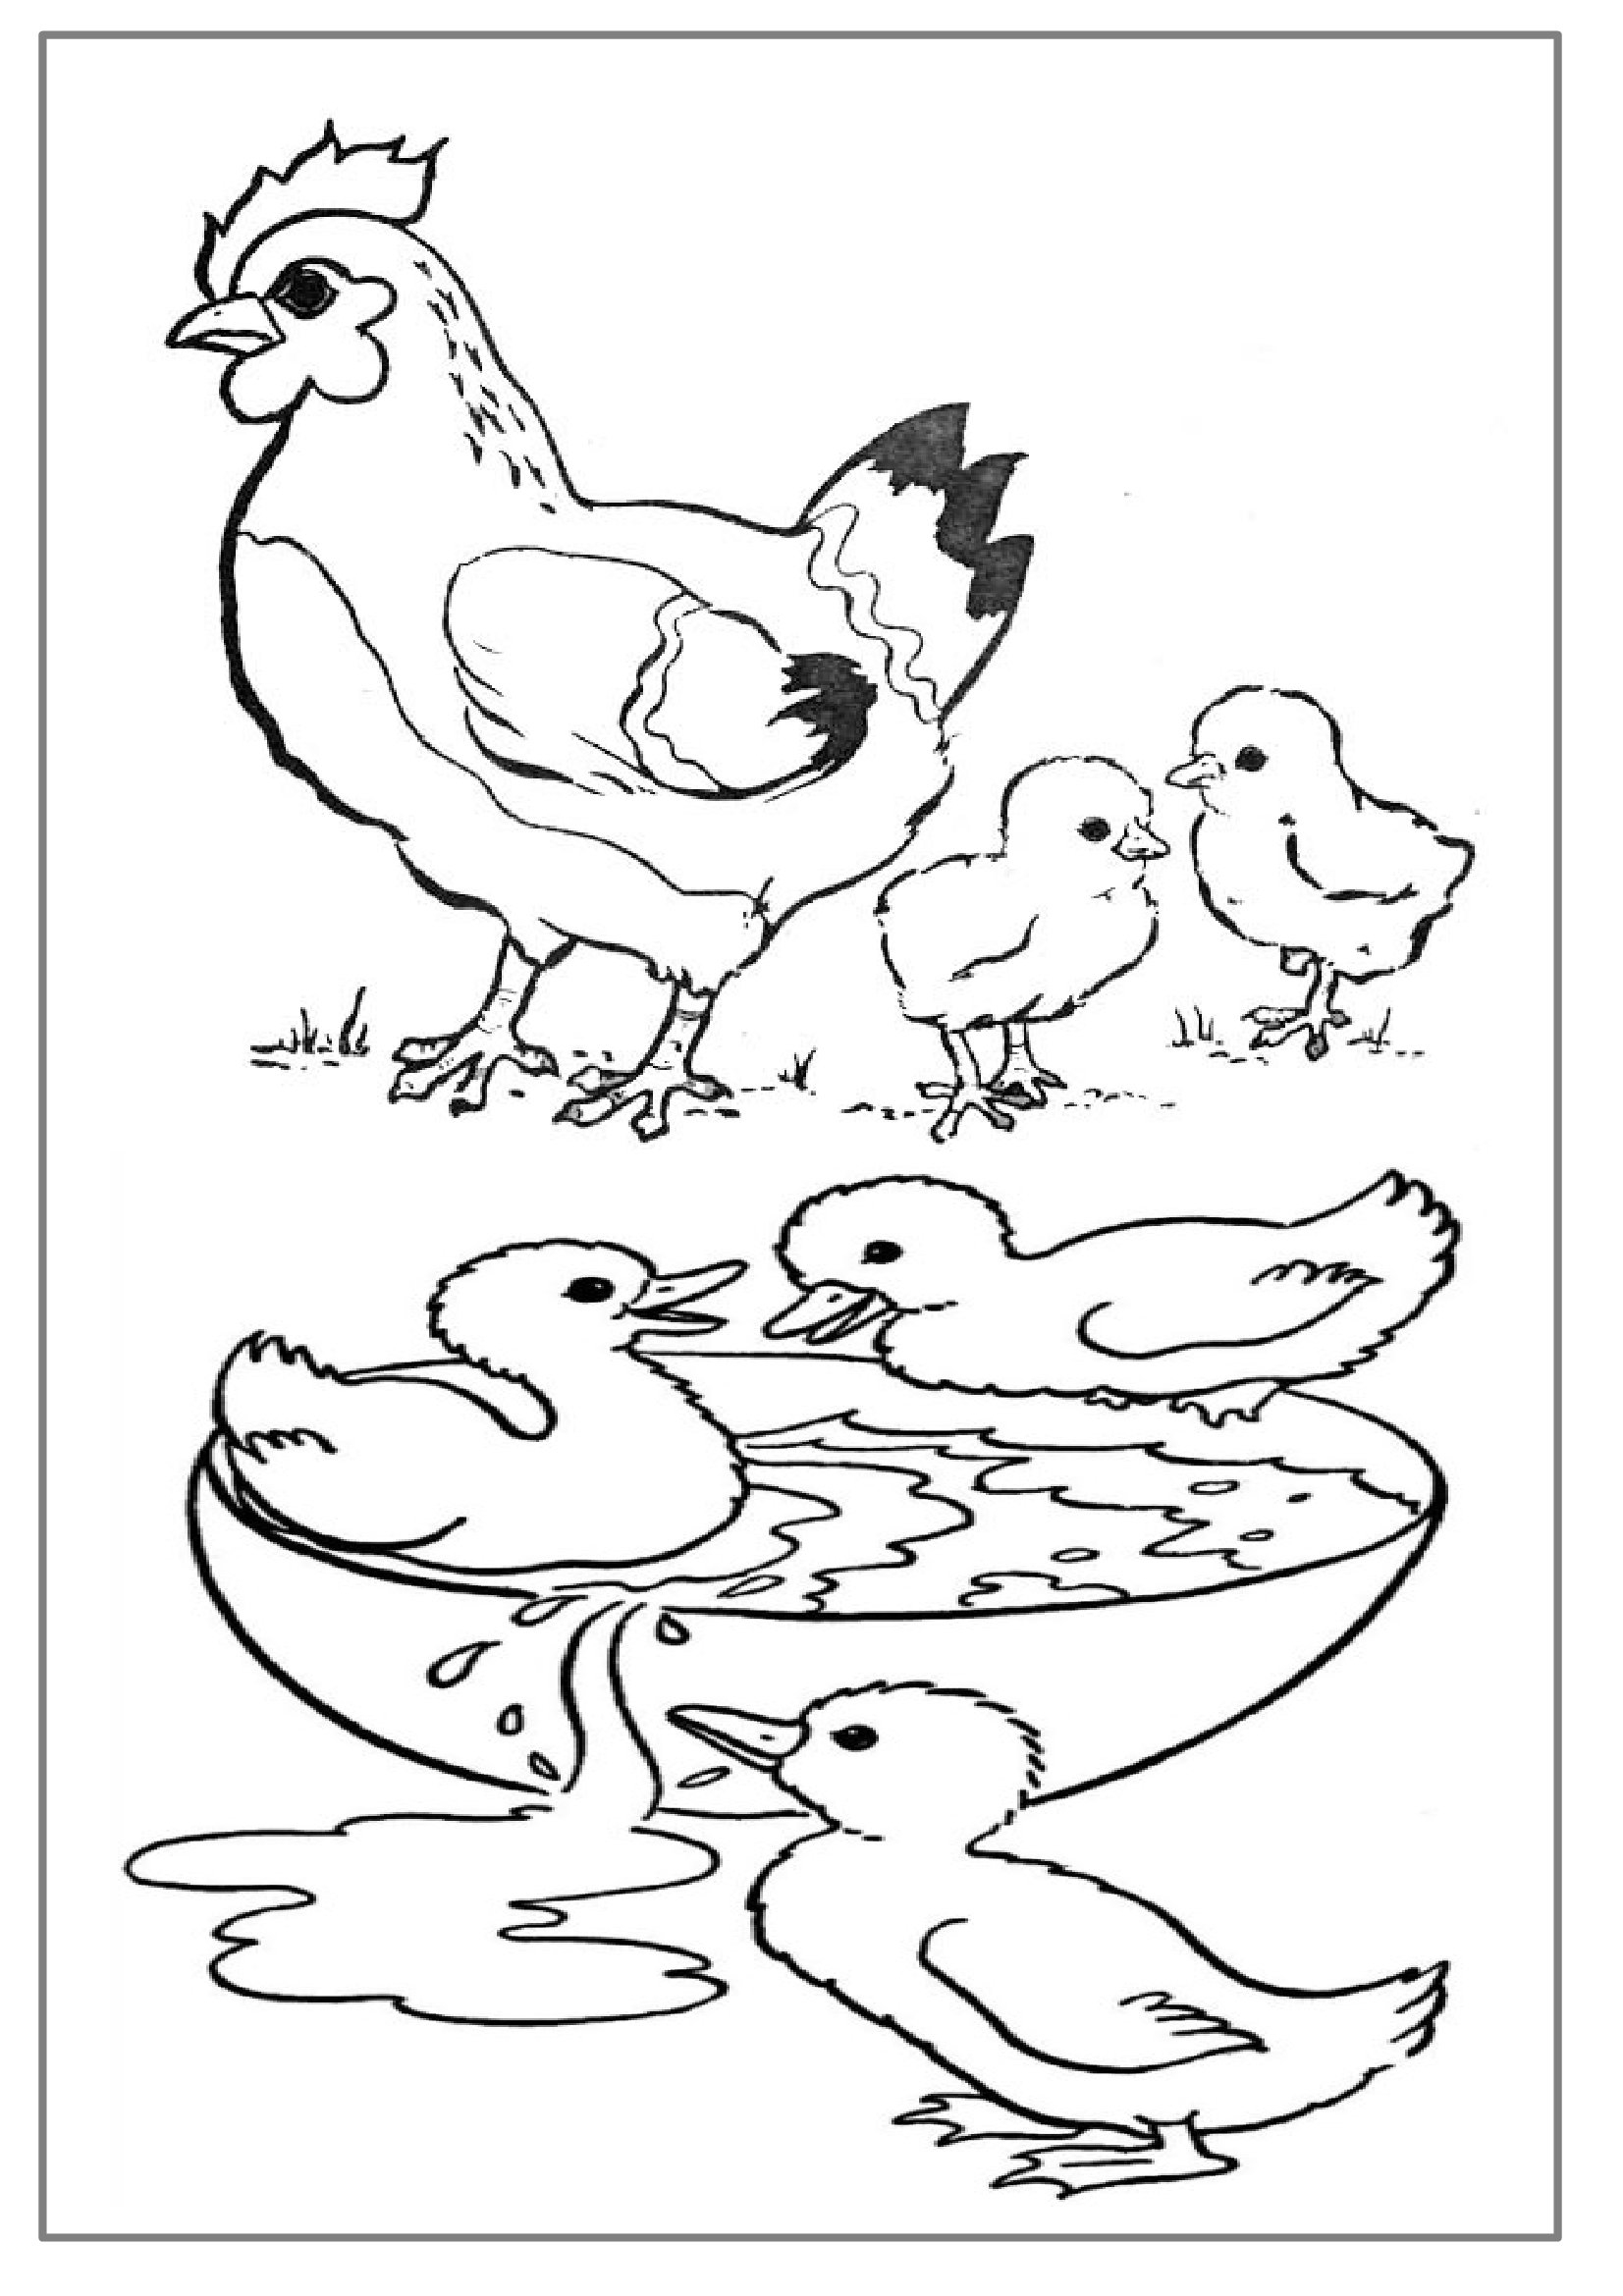 Animaux De La Ferme #45 (Animaux) – Coloriages À Imprimer destiné Dessin Animaux De La Ferme À Imprimer 